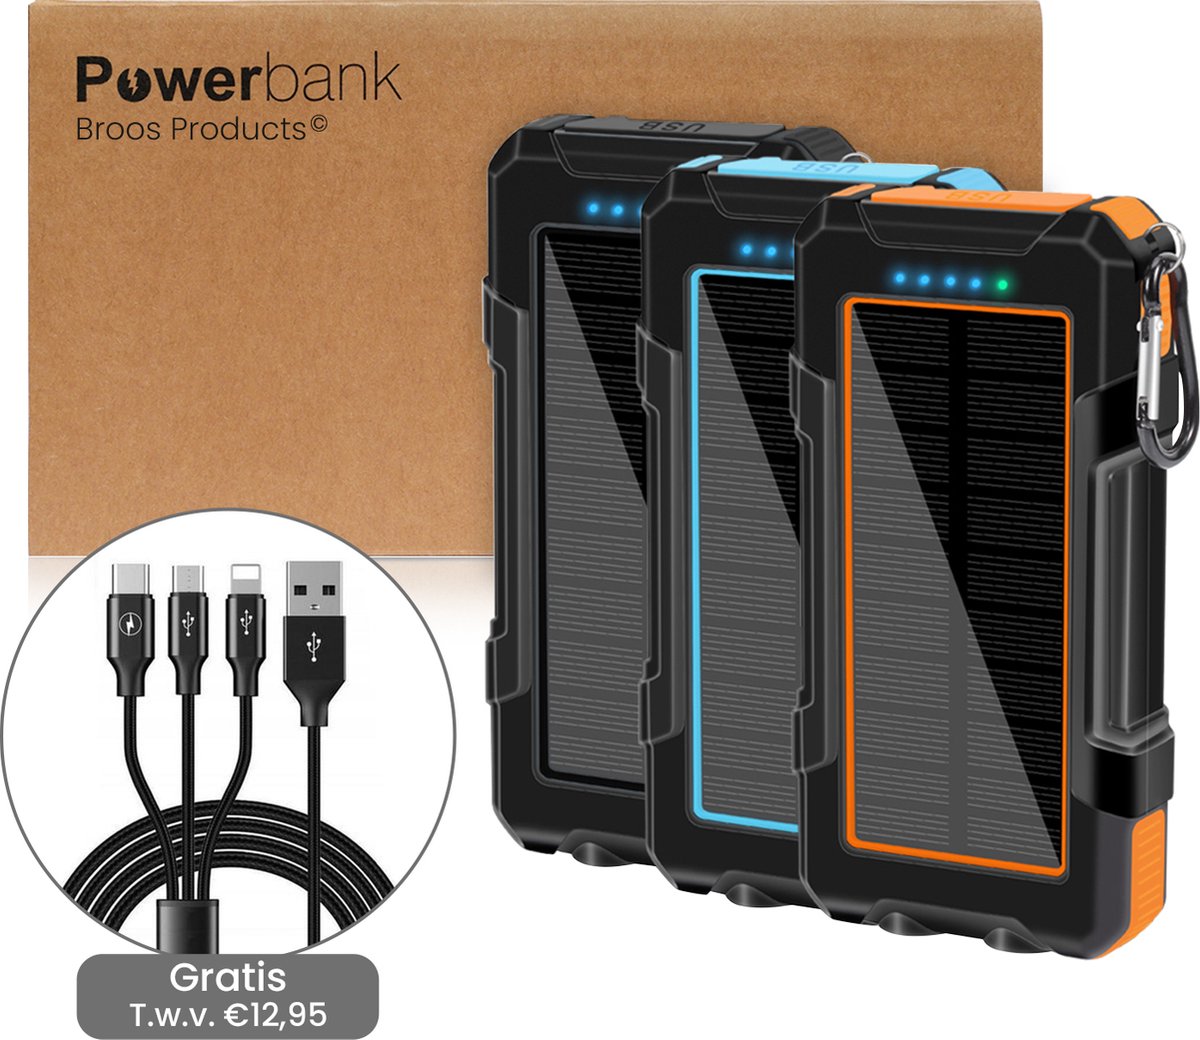 Solar Powerbank 20000 mAh - GRATIS 3 in 1 usb Oplaadkabel - Draadloos opladen - Noodpakket - Solar Charger - 3 poorten - Iphone & Samsung